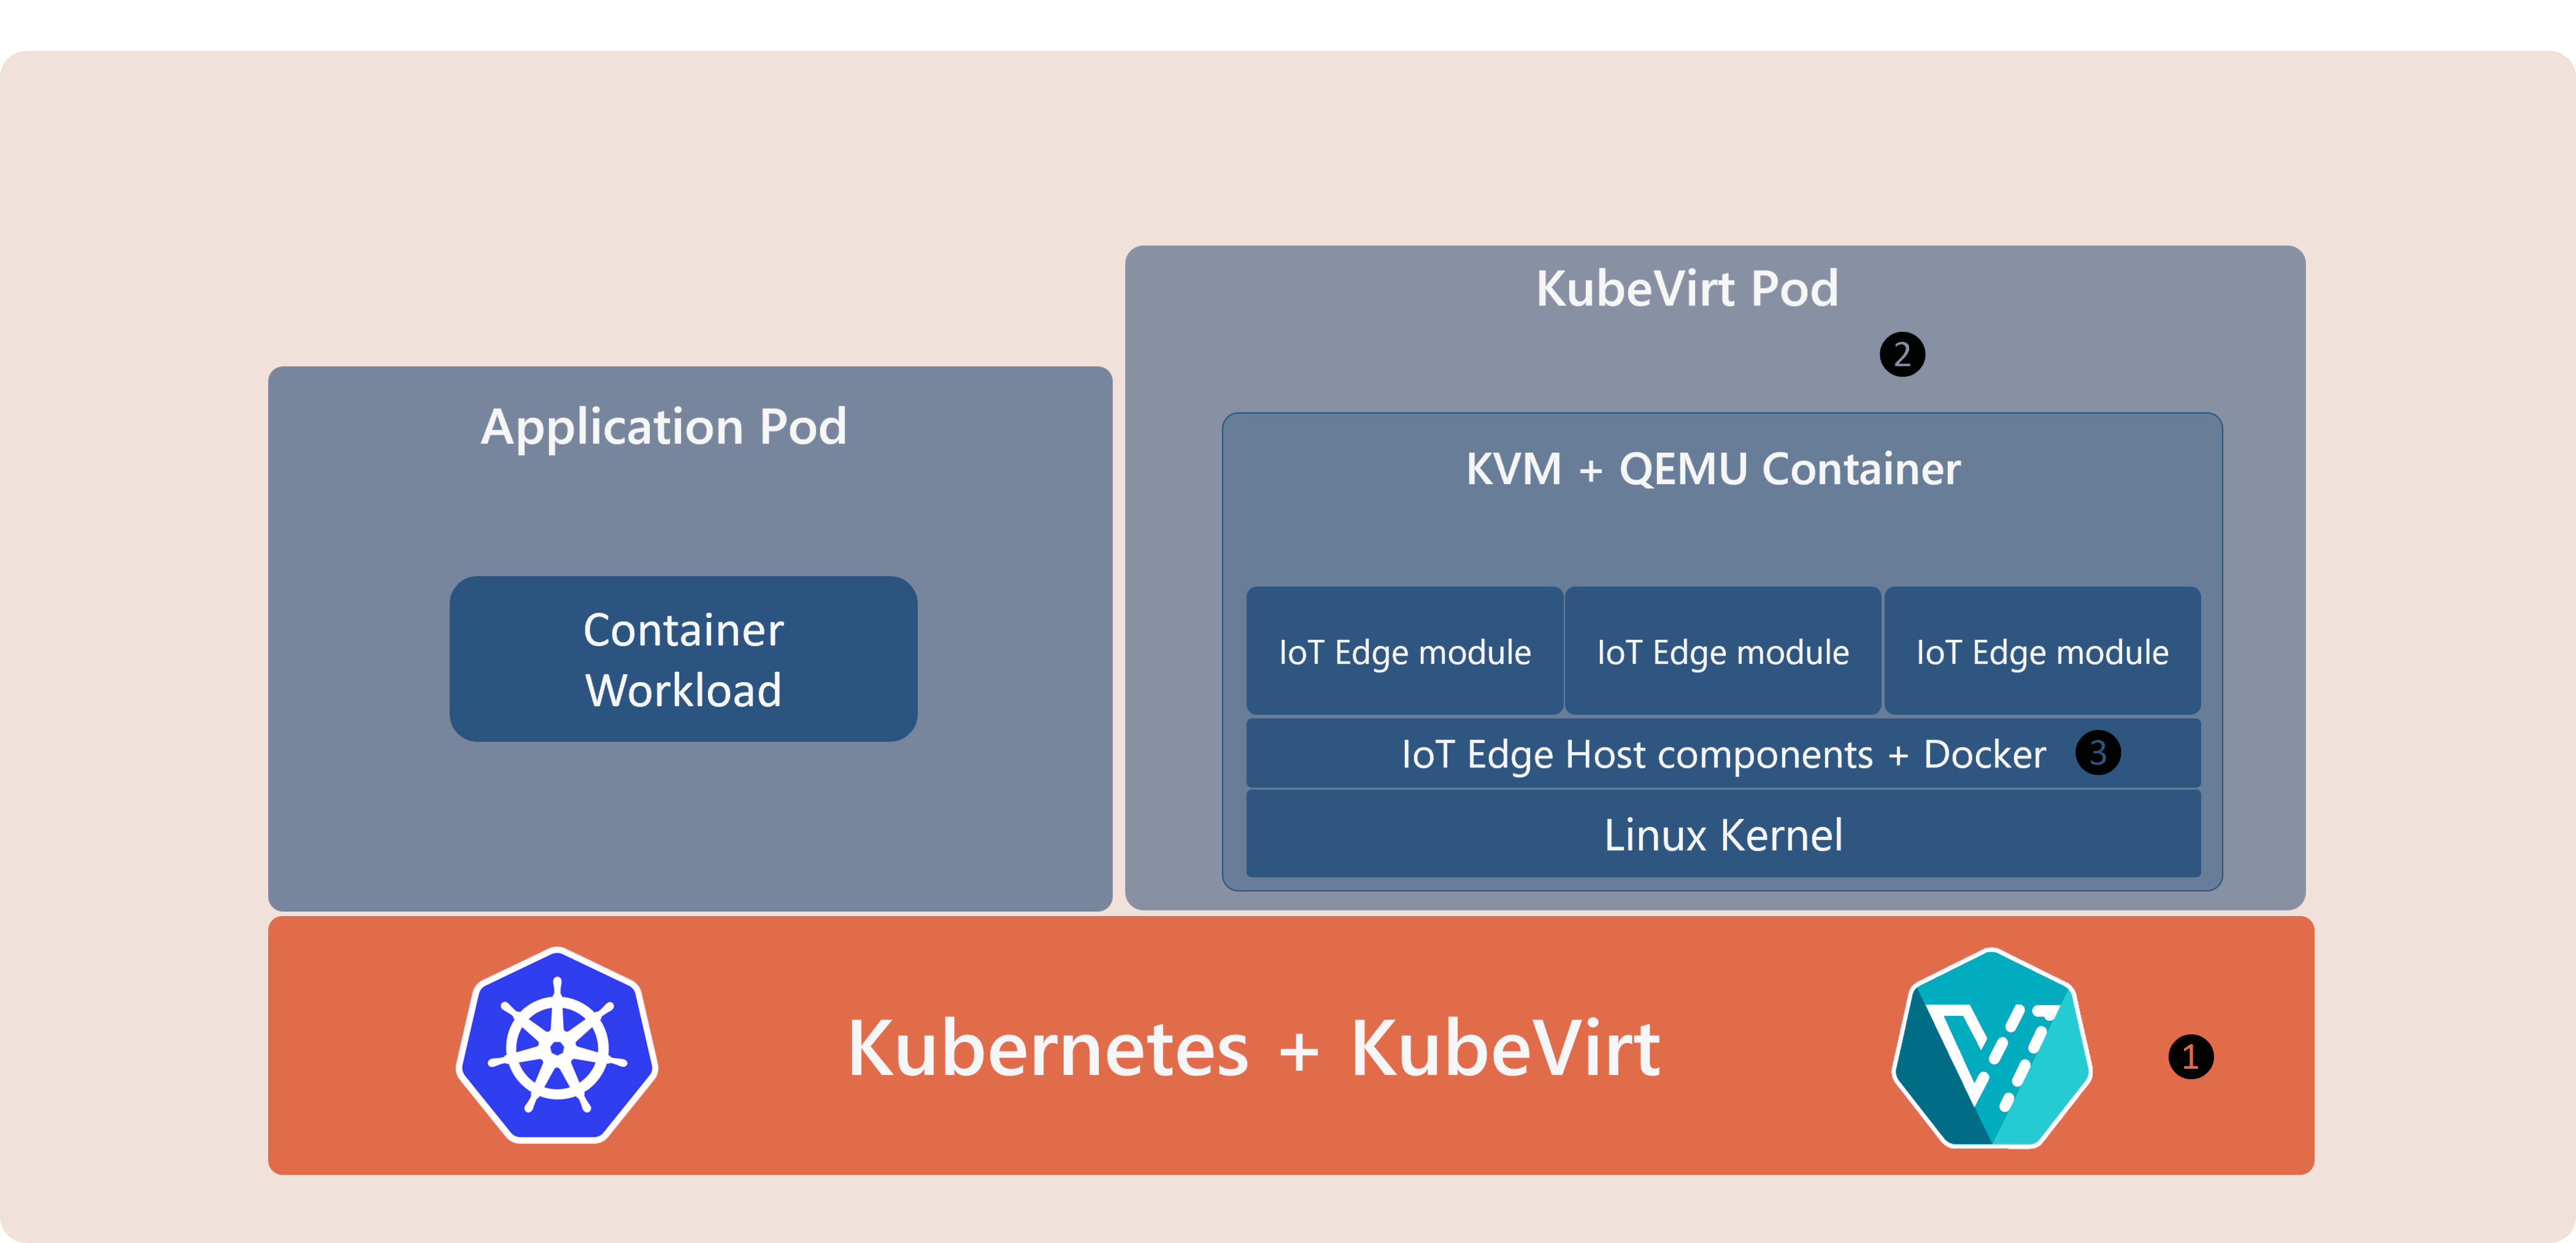 IoT Edge on Kubernetes with KubeVirt